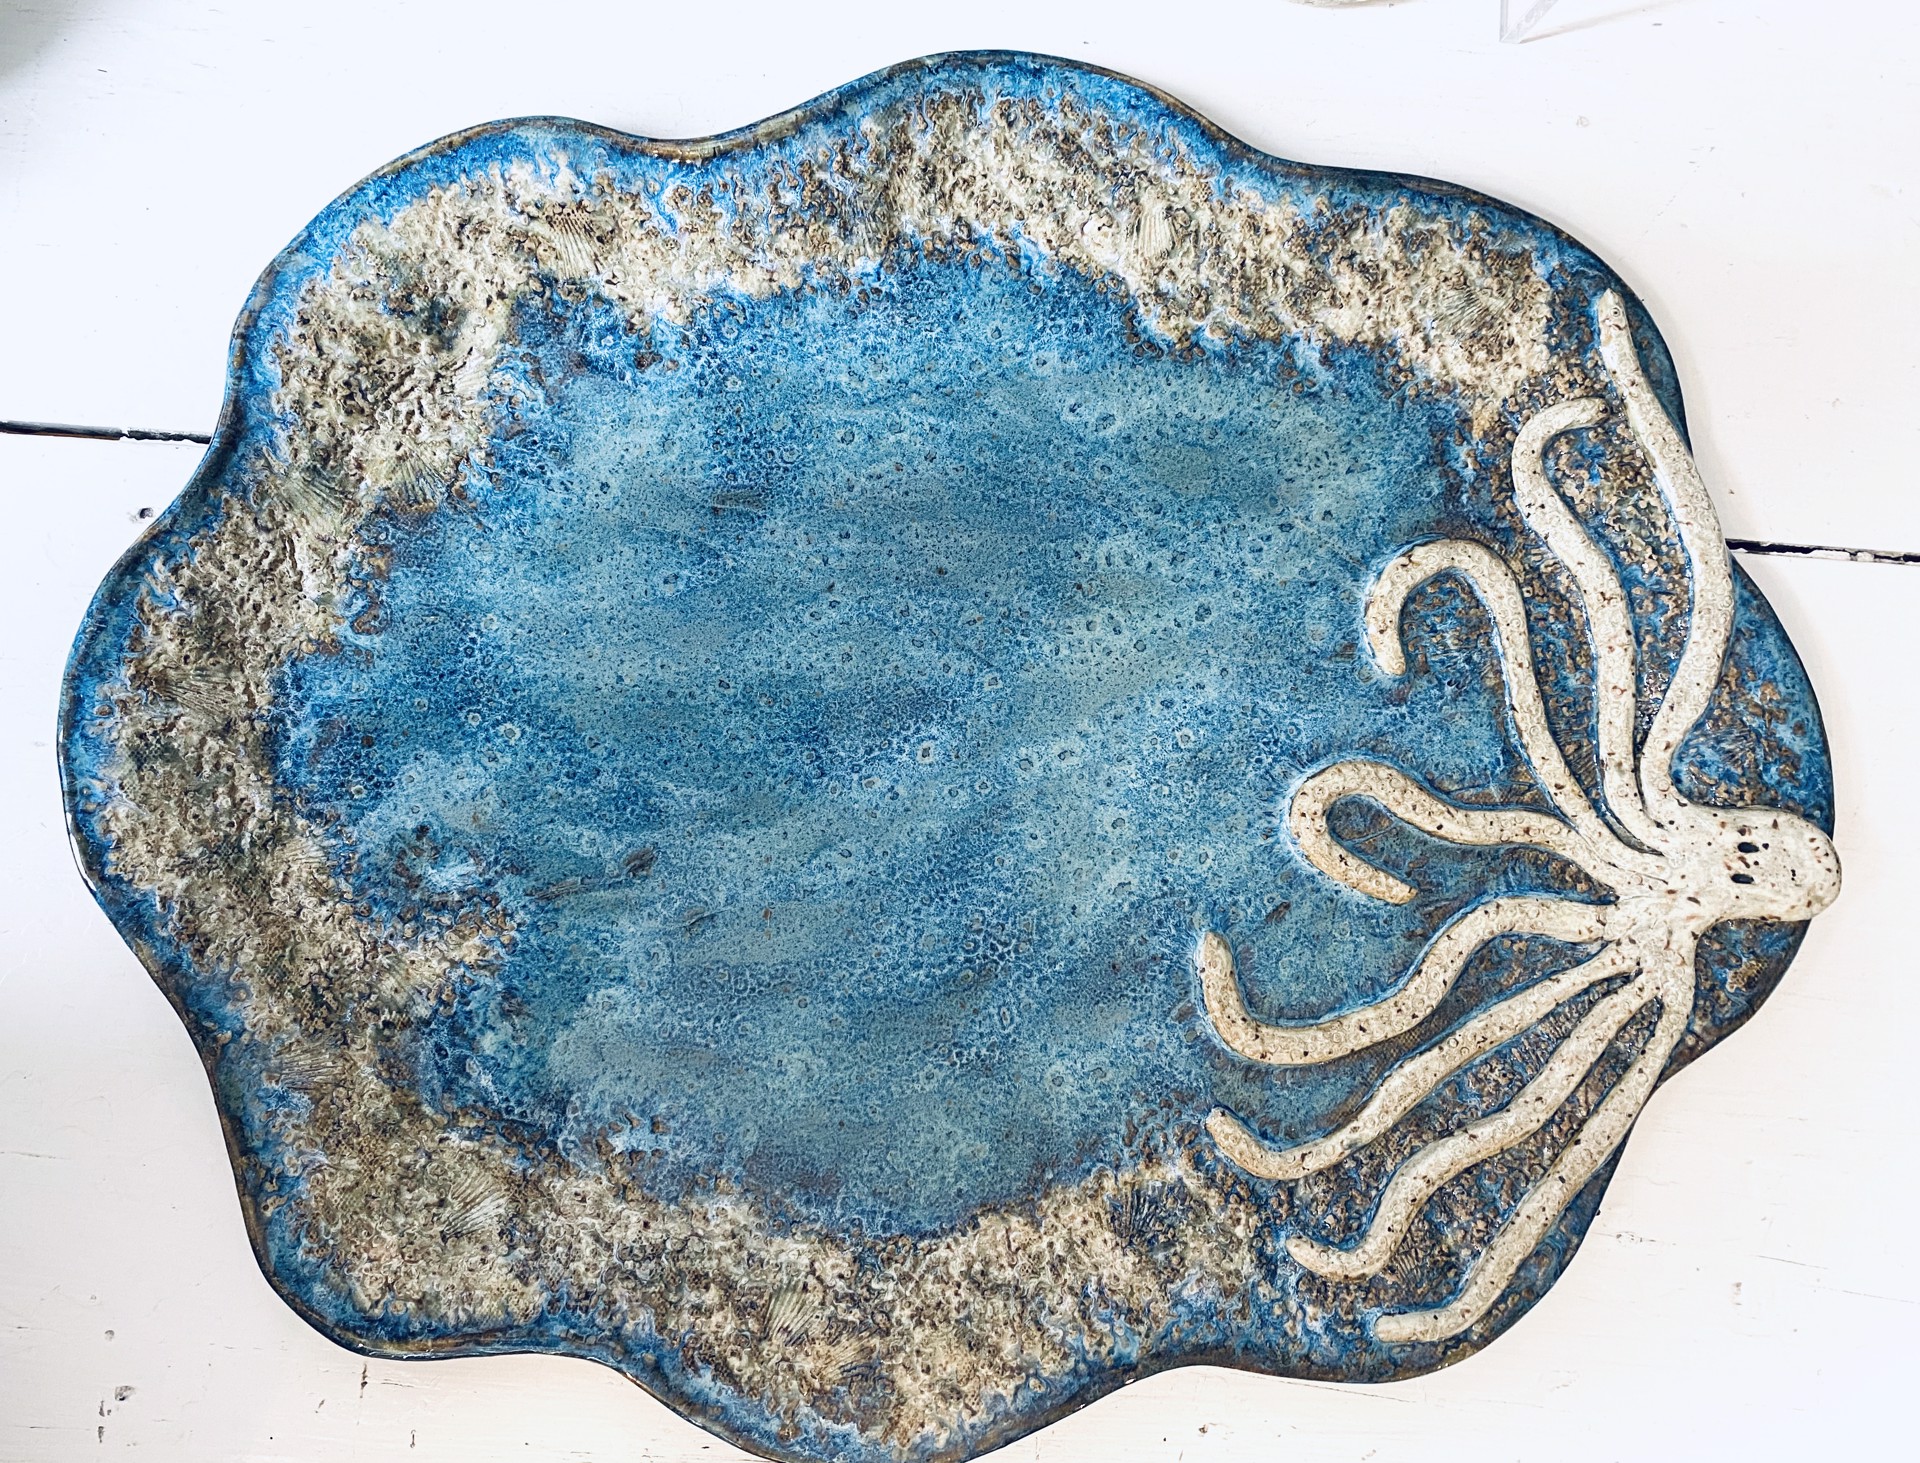 Octopus Platter #183 by Jim & Steffi Logan